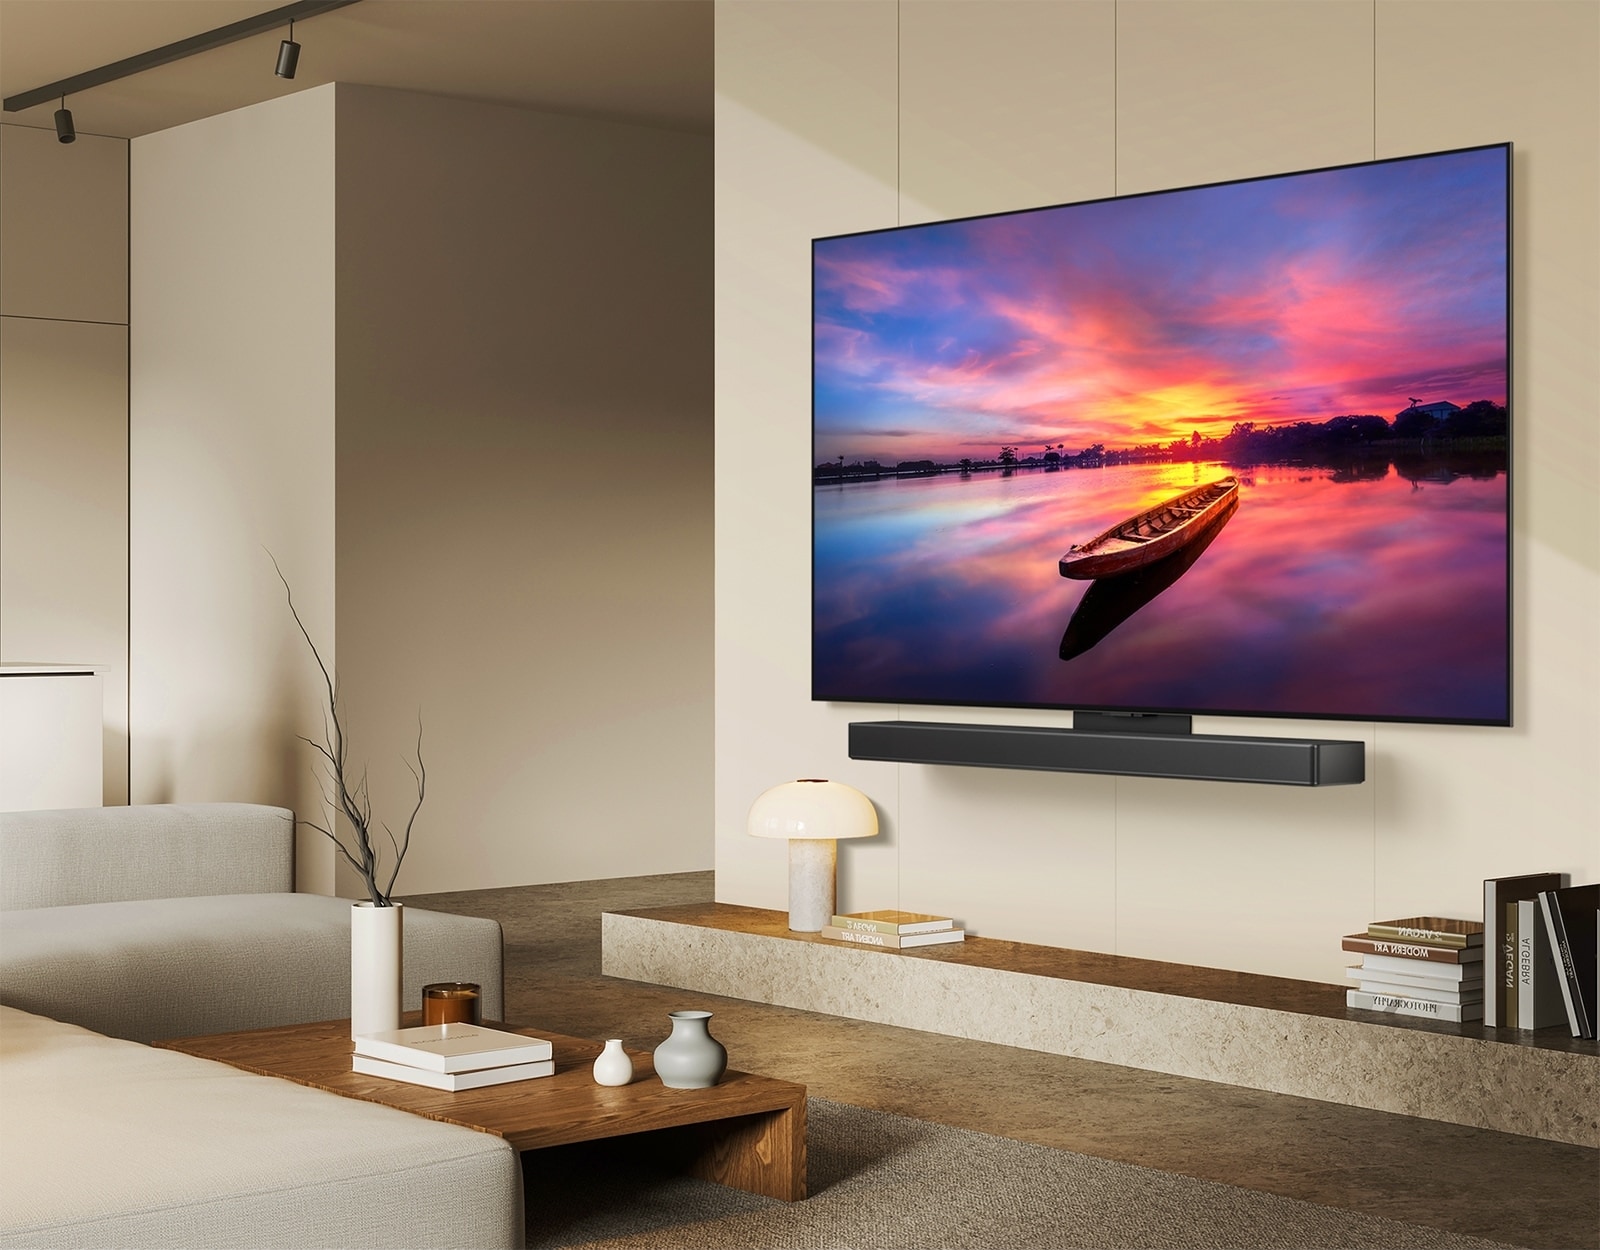 LG OLED TV, OLED C4 obrnjen za 45 stopinj v levo prikazuje čudovit sončni zahod s čolnom na jezeru, medtem ko je TV povezan z LG Soundbar z nosilcem Synergy v minimalističnem bivalnem prostoru.